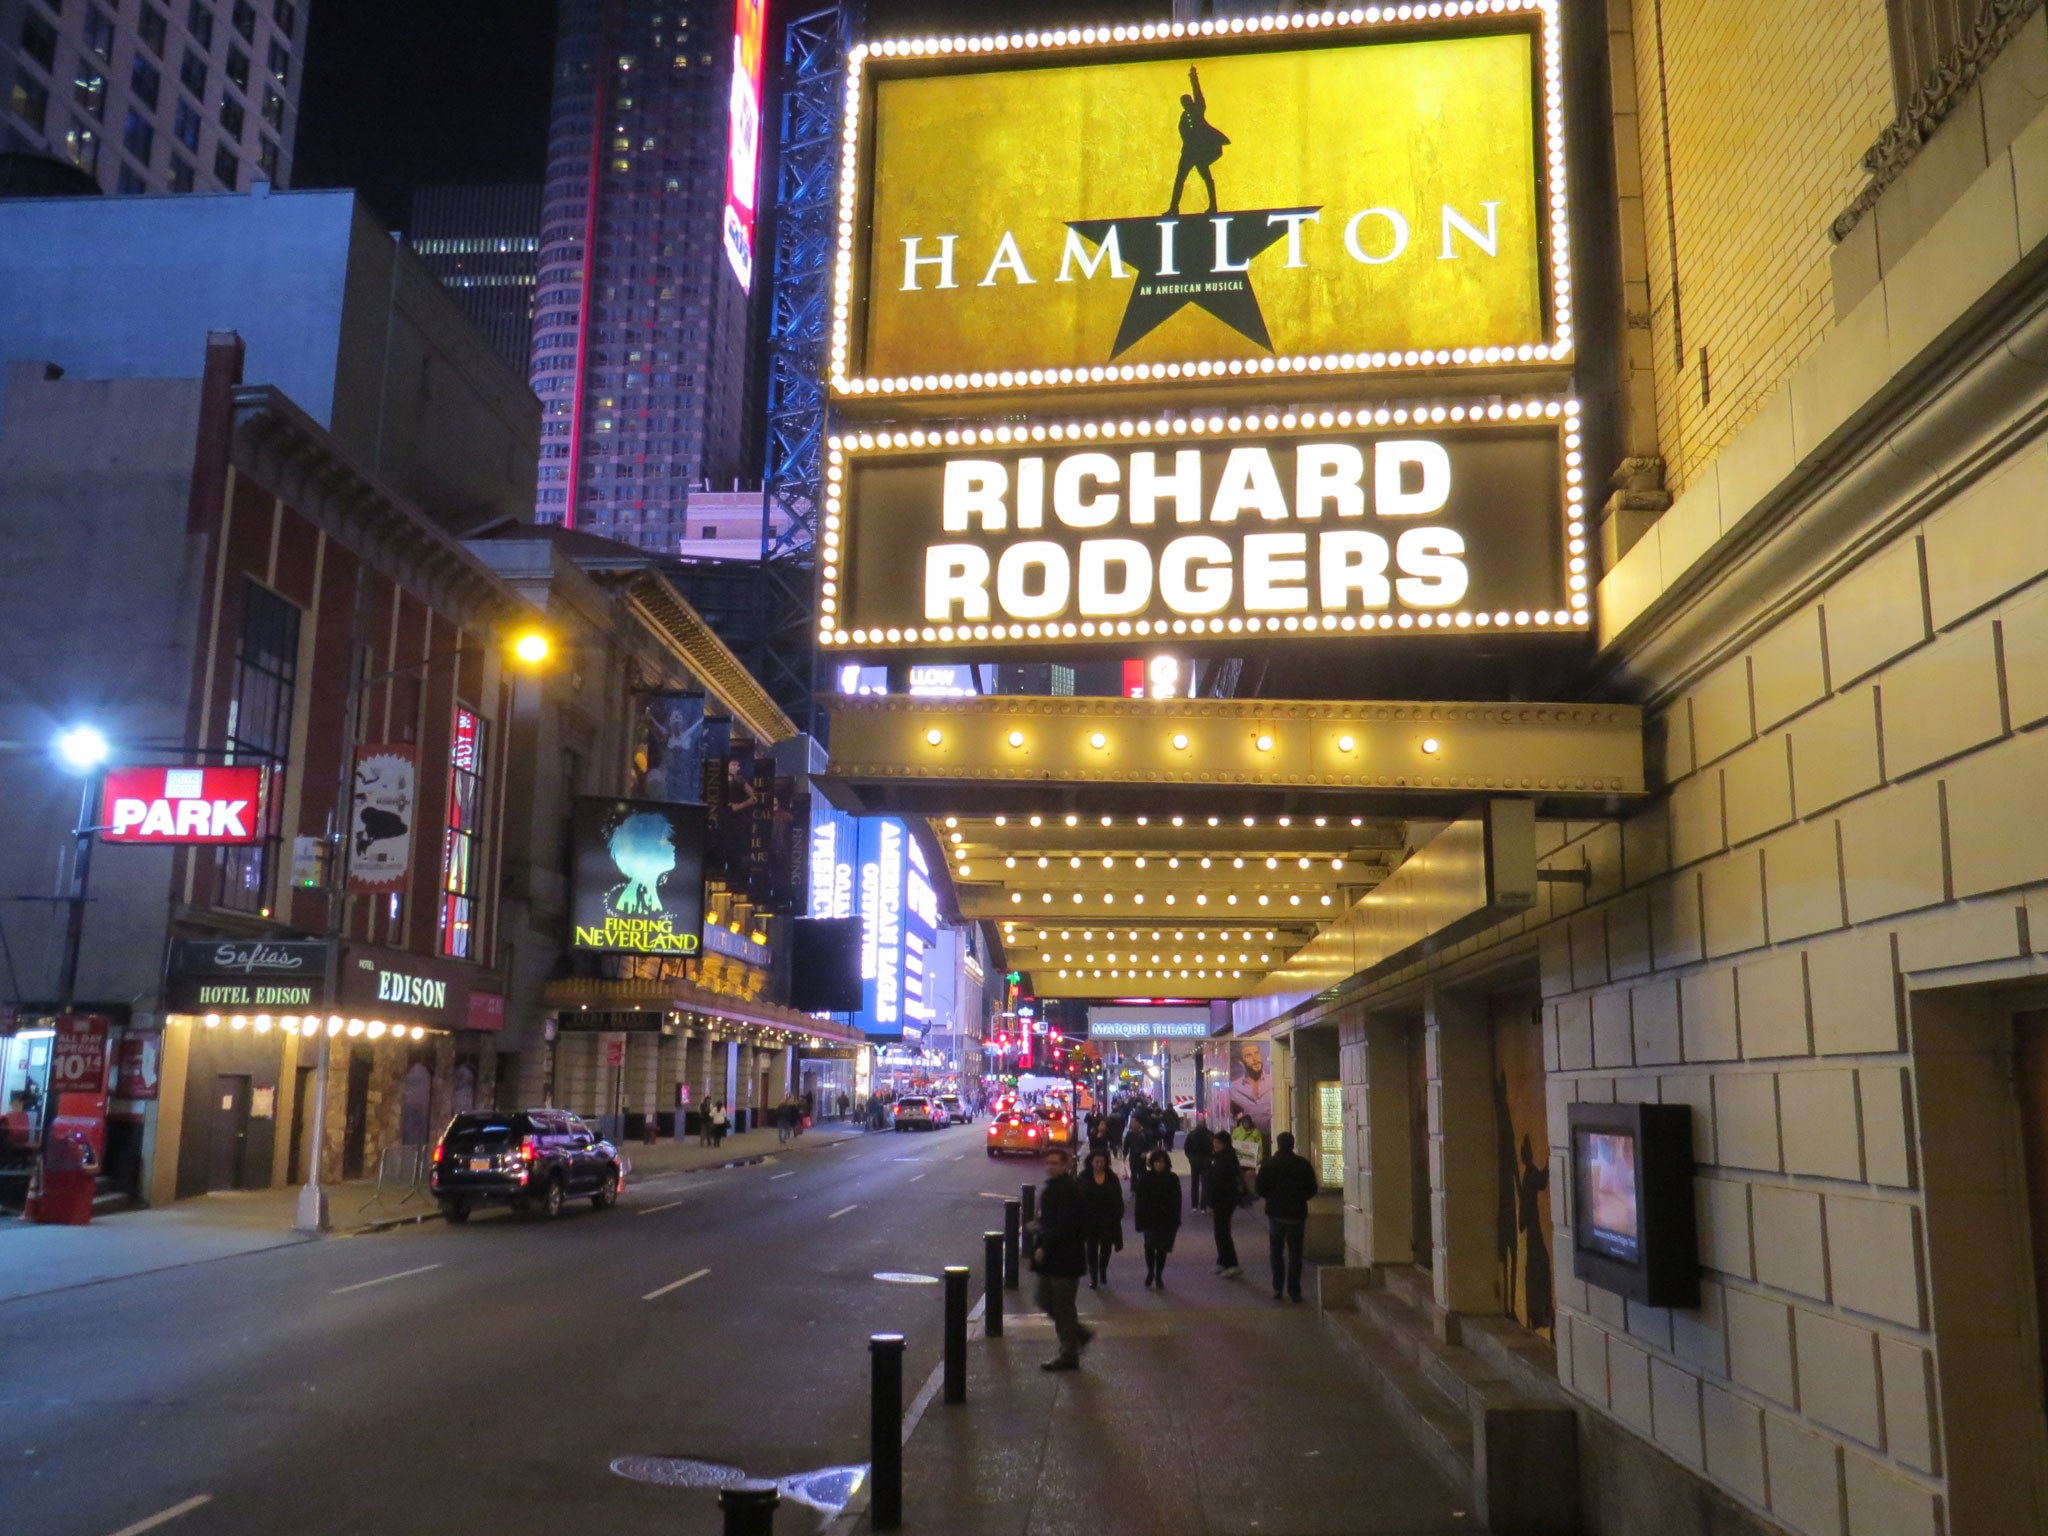 Hamilton Broadway Theatre Marquee